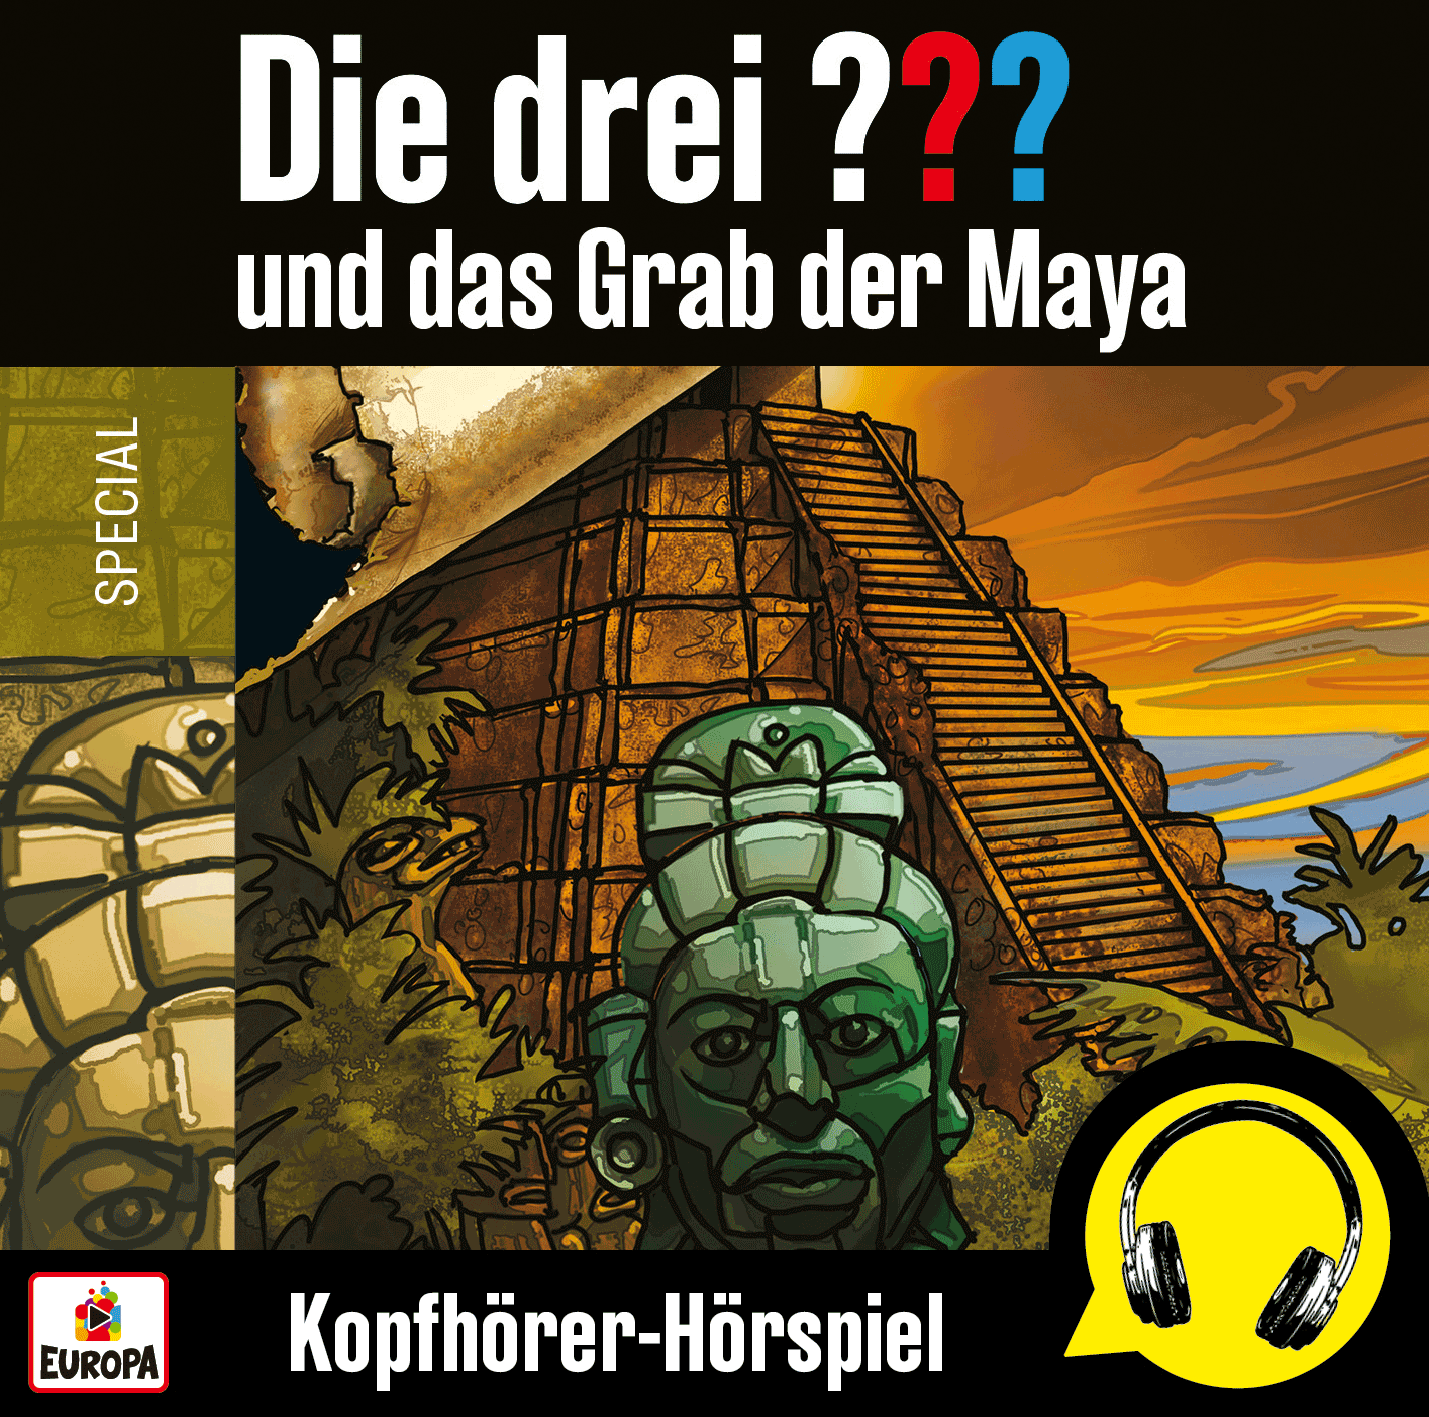 Kopfhörer-Hörspiel - Das Planetariums Hörspiel Die drei ??? und das Grab der Maya erscheint am 20. November auch in ...